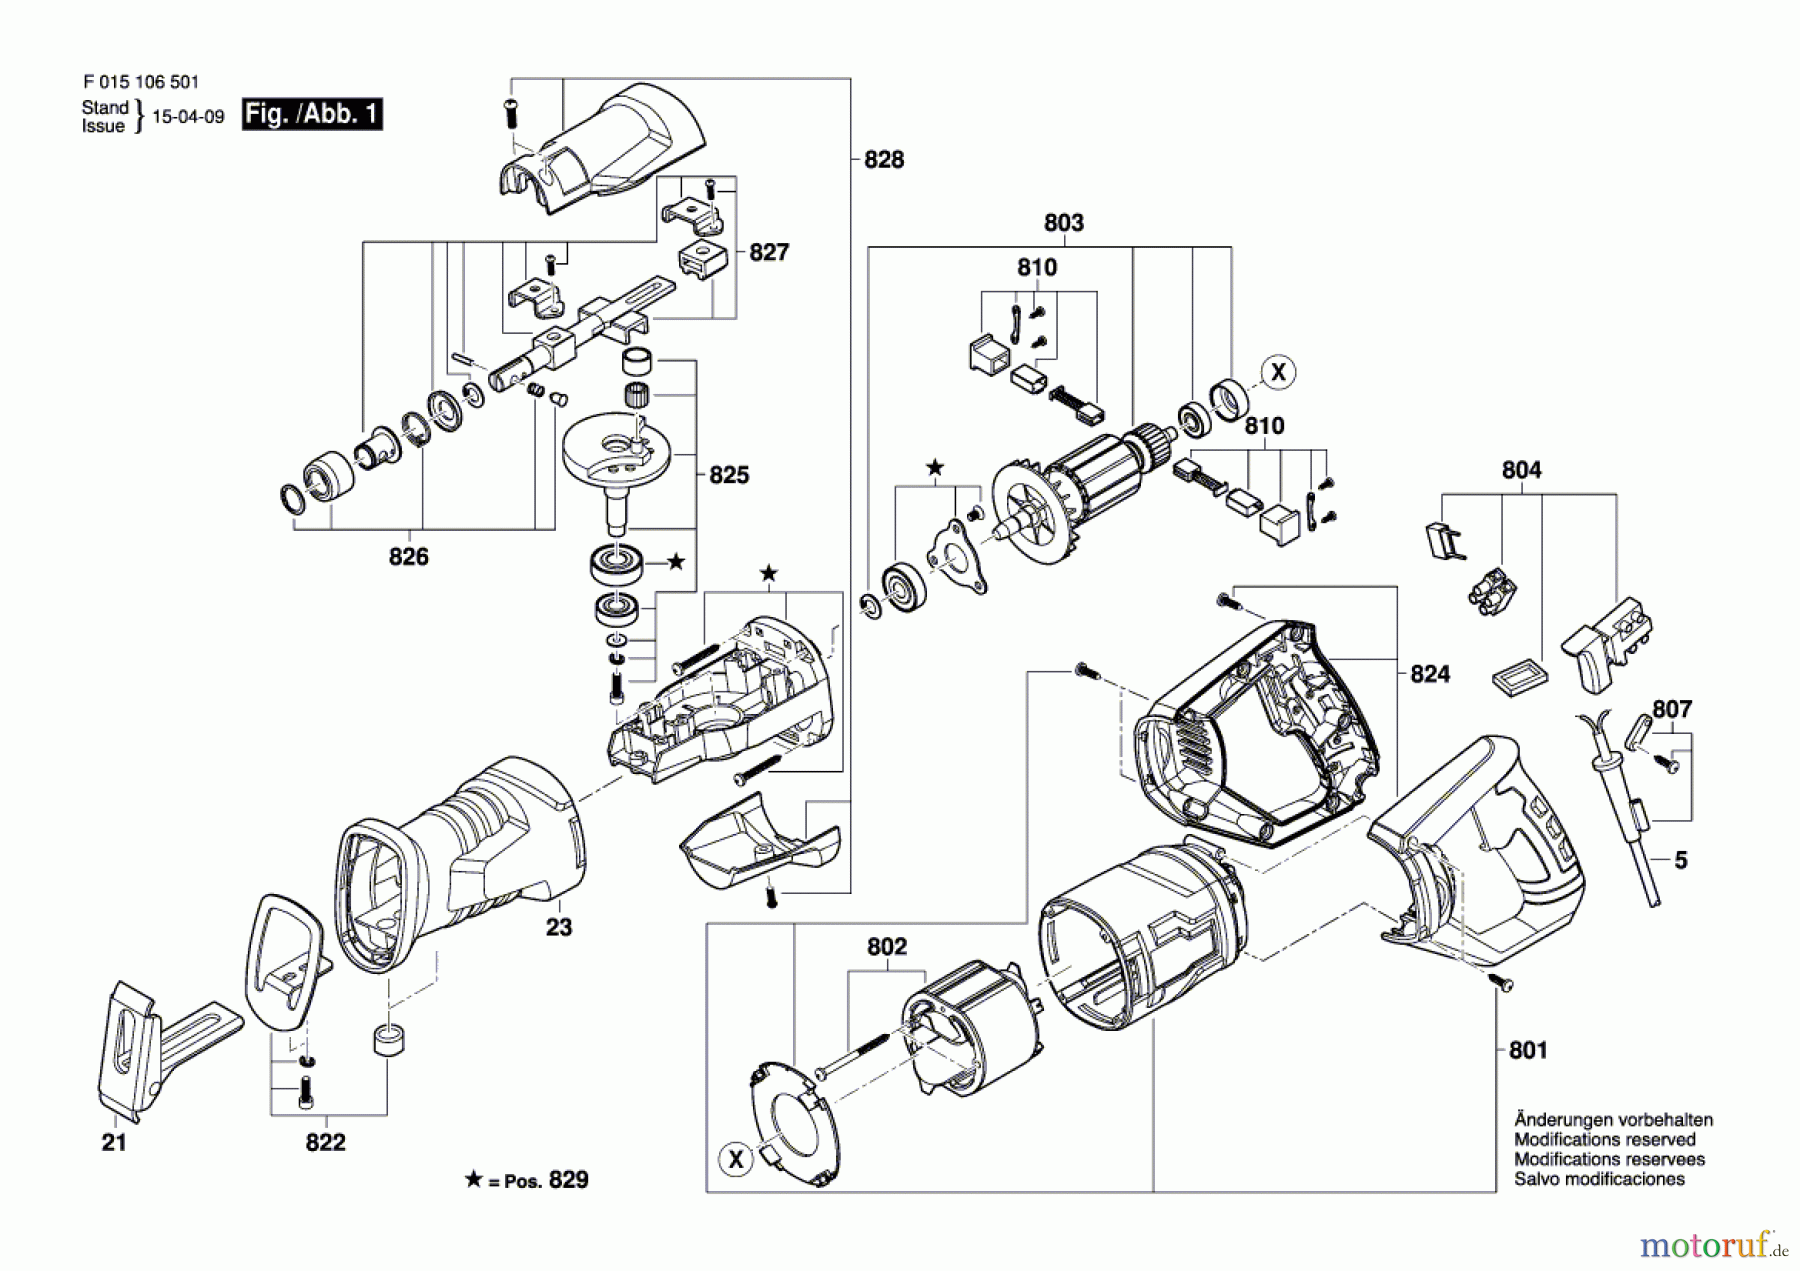  Bosch Werkzeug Gw-Säbelsäge 1065 Seite 1